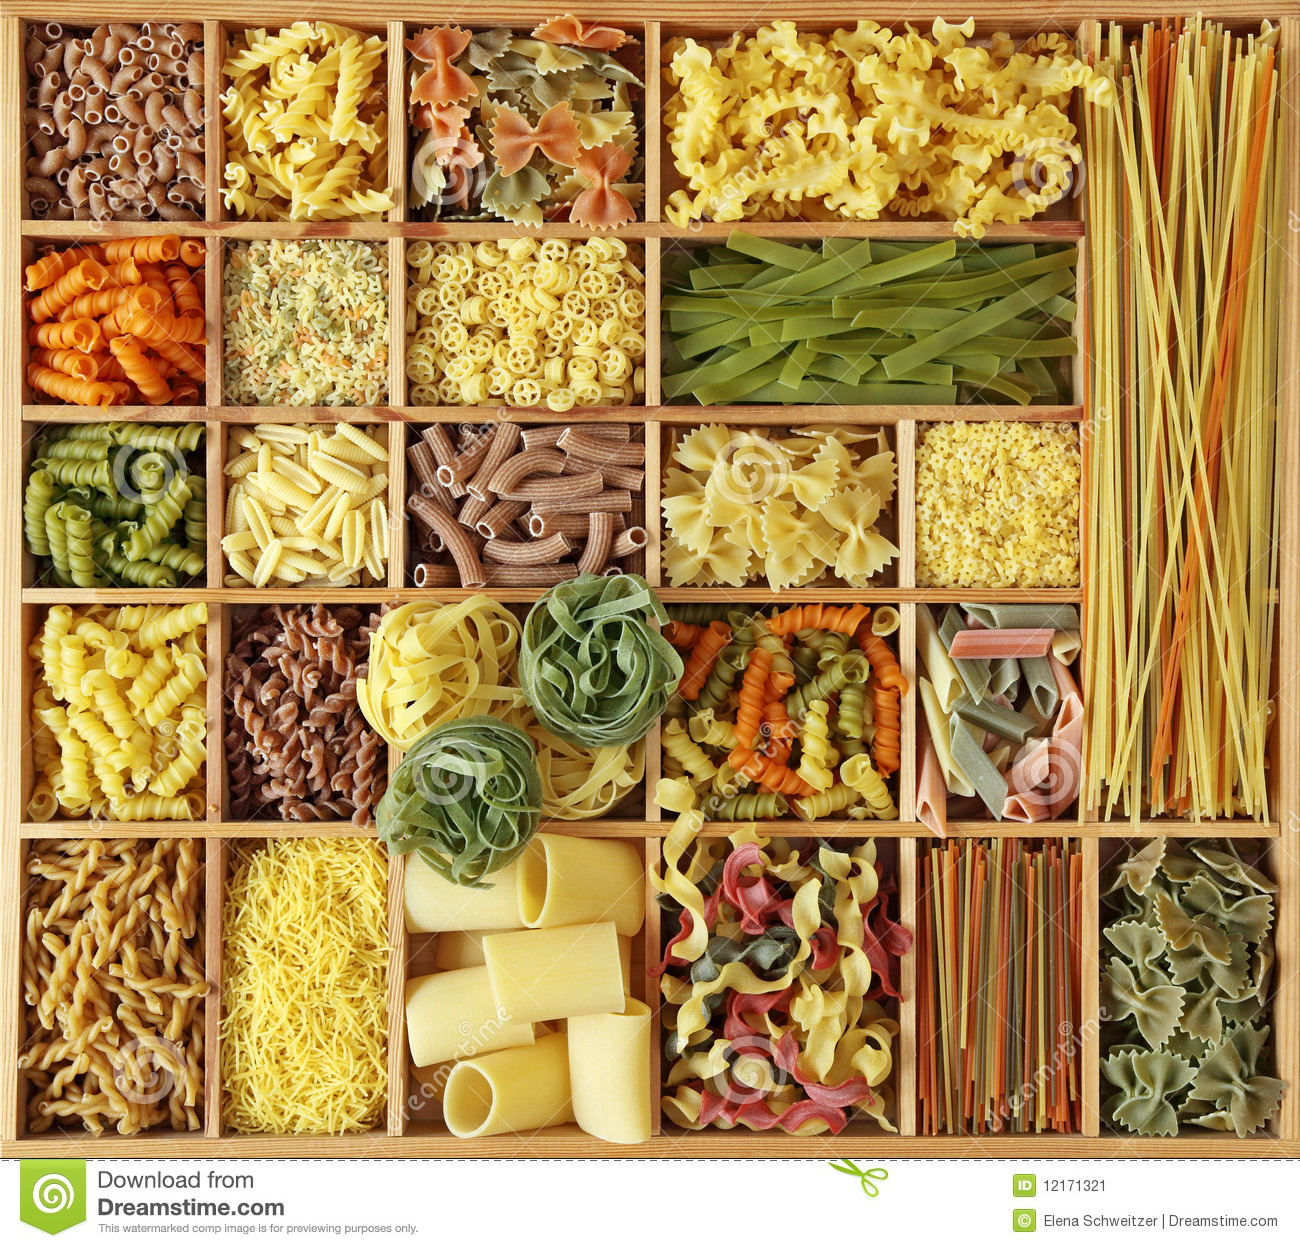 italian-pasta-collection-12171321.jpg